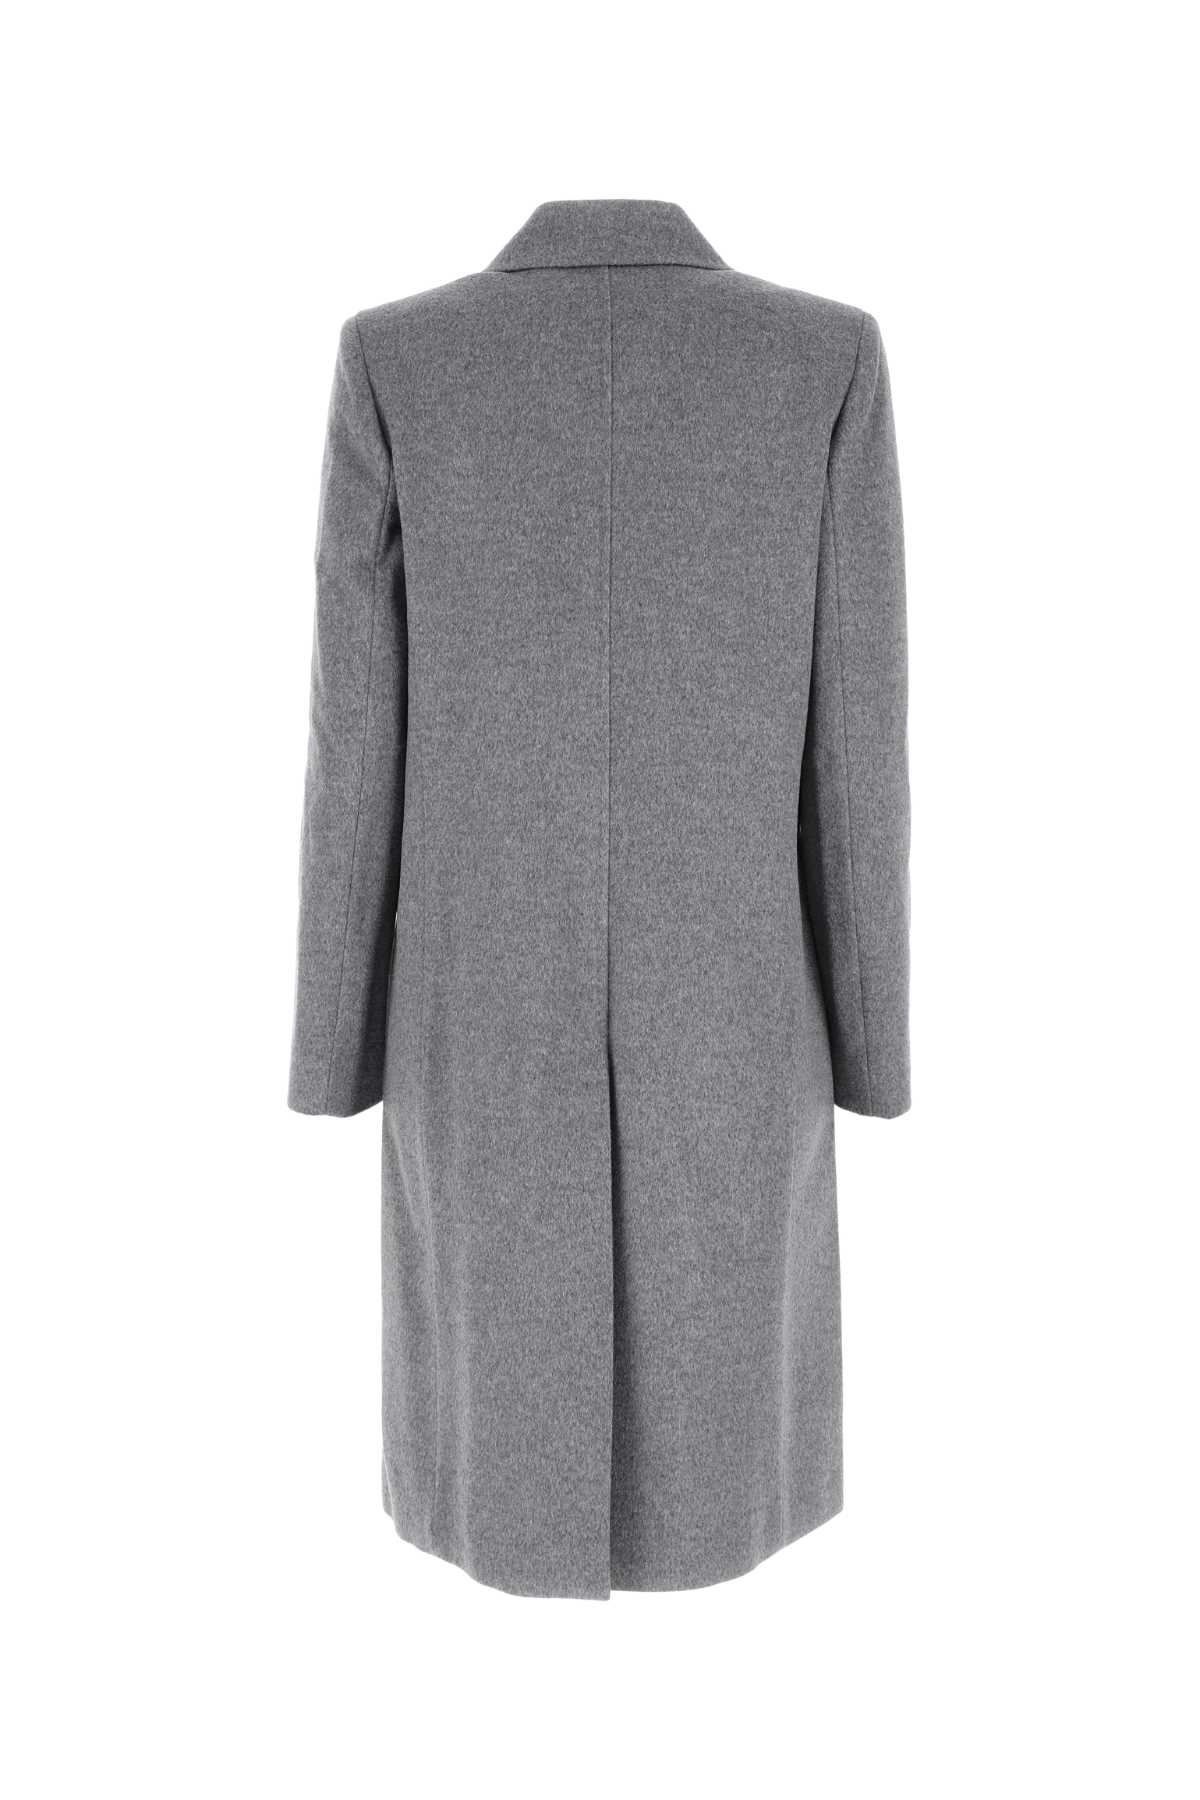 Max Mara Grey Wool Manuel Coat In 011